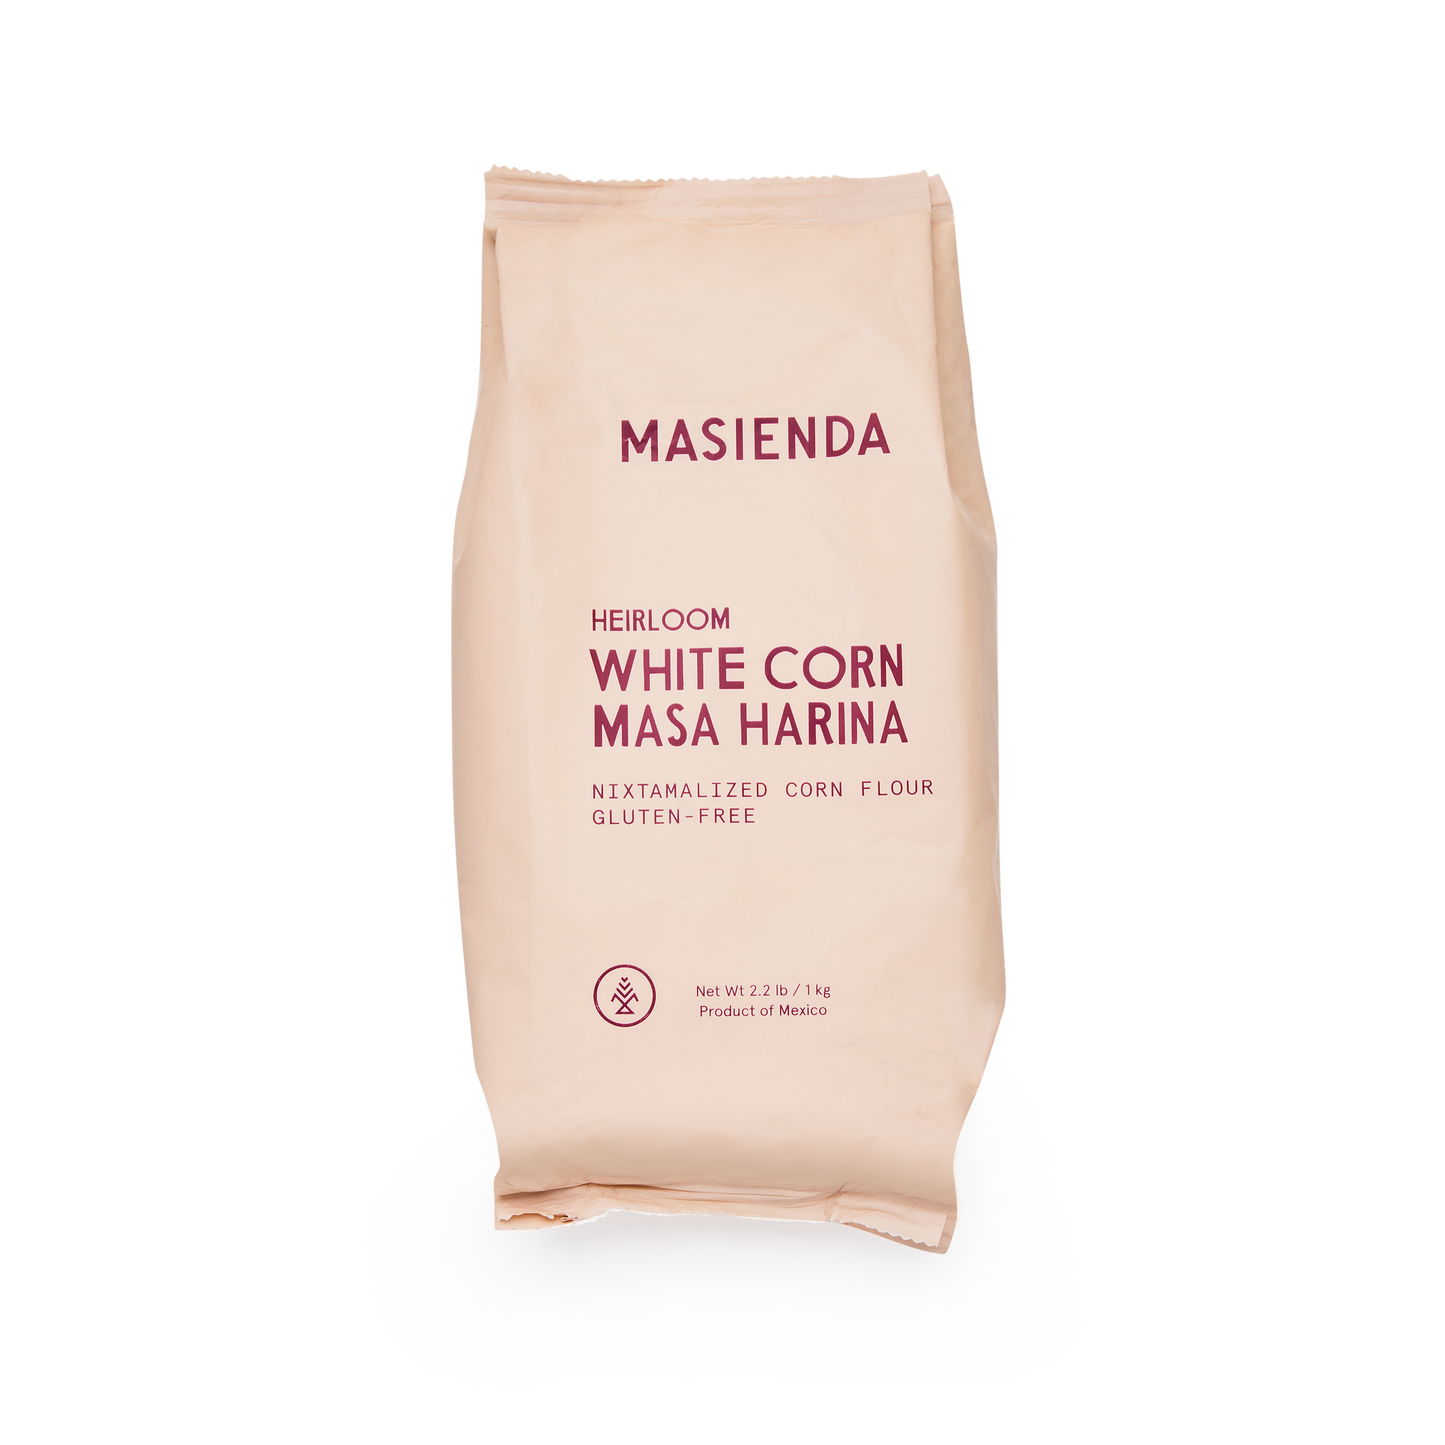 Heirloom White Corn Masa Harina - Masienda